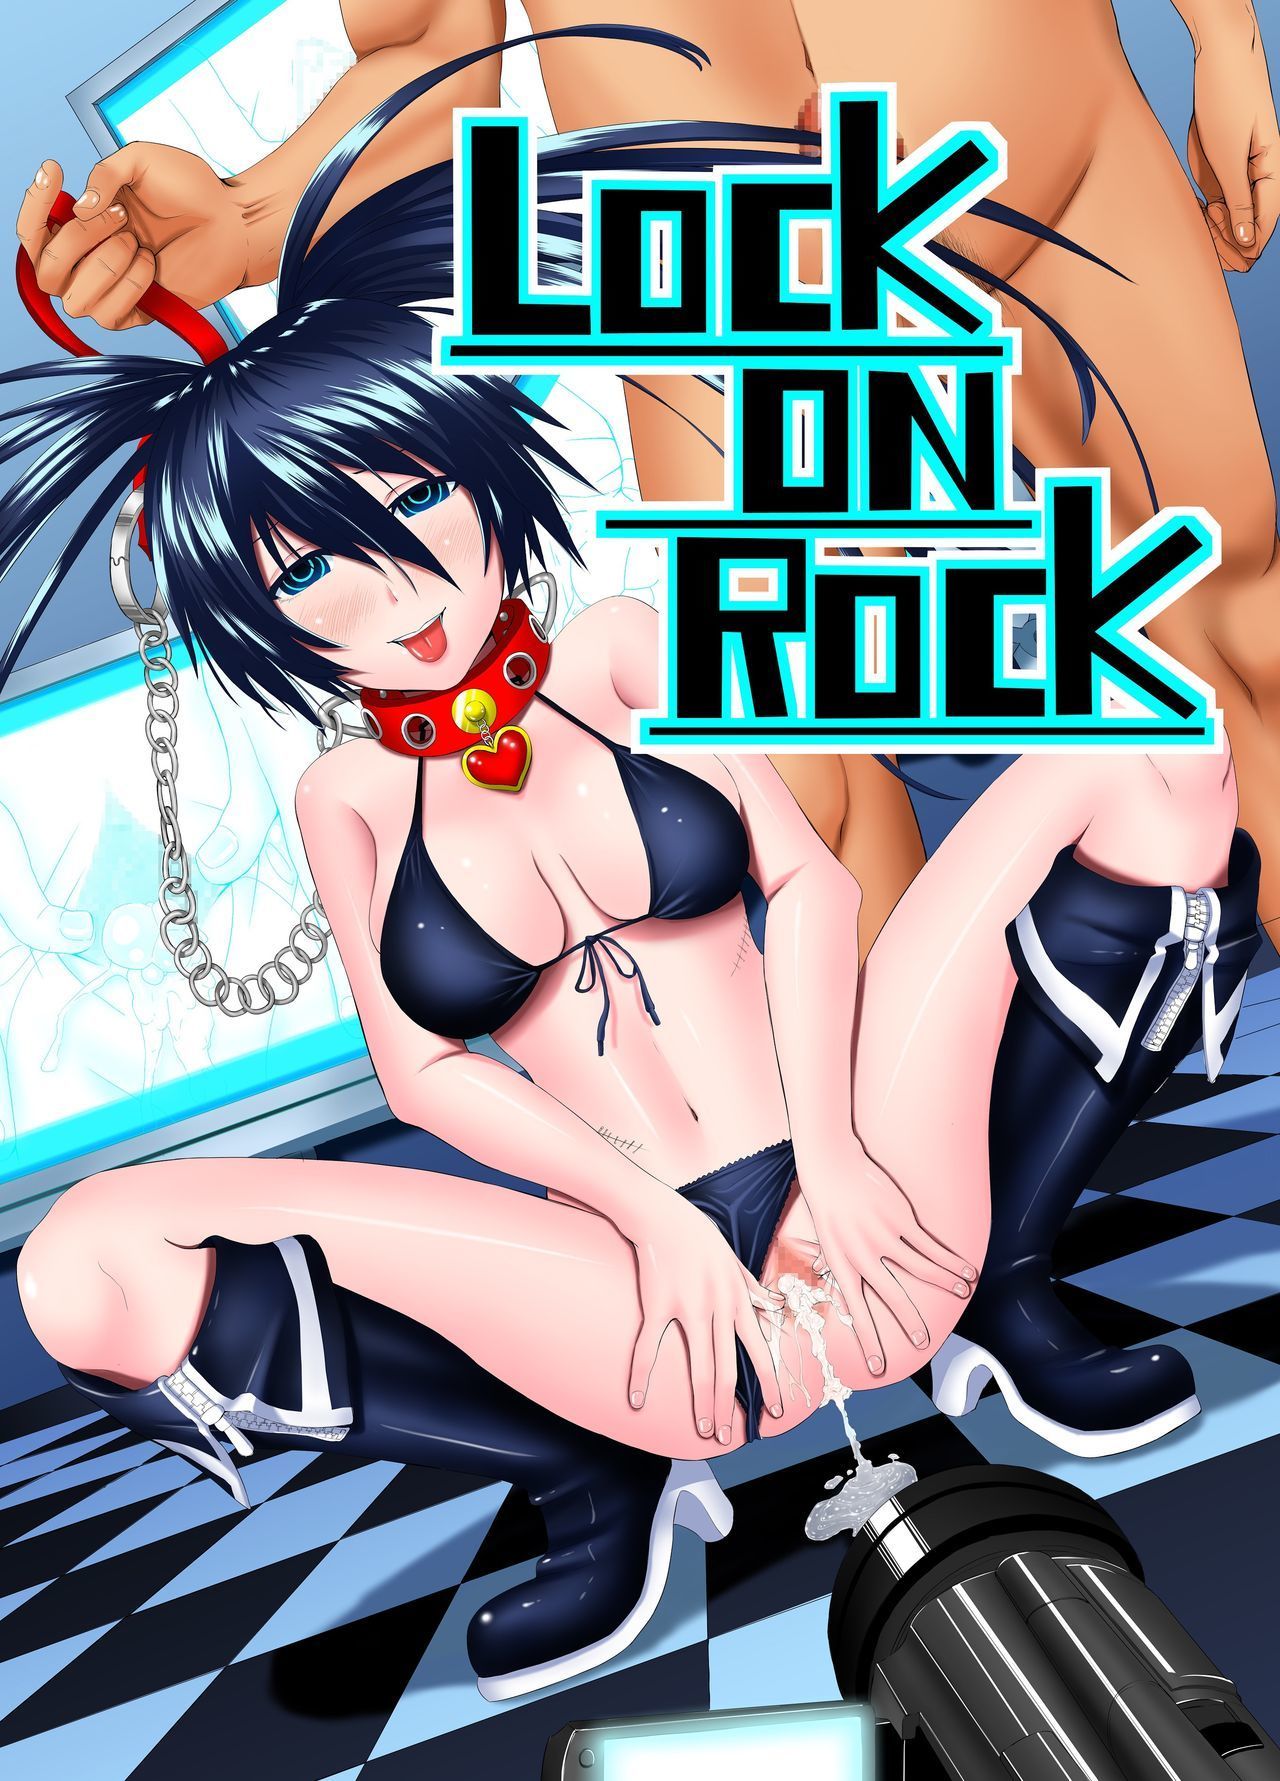 LOCK ON ROCK - Japanese - Black Rock Shooter Hentai